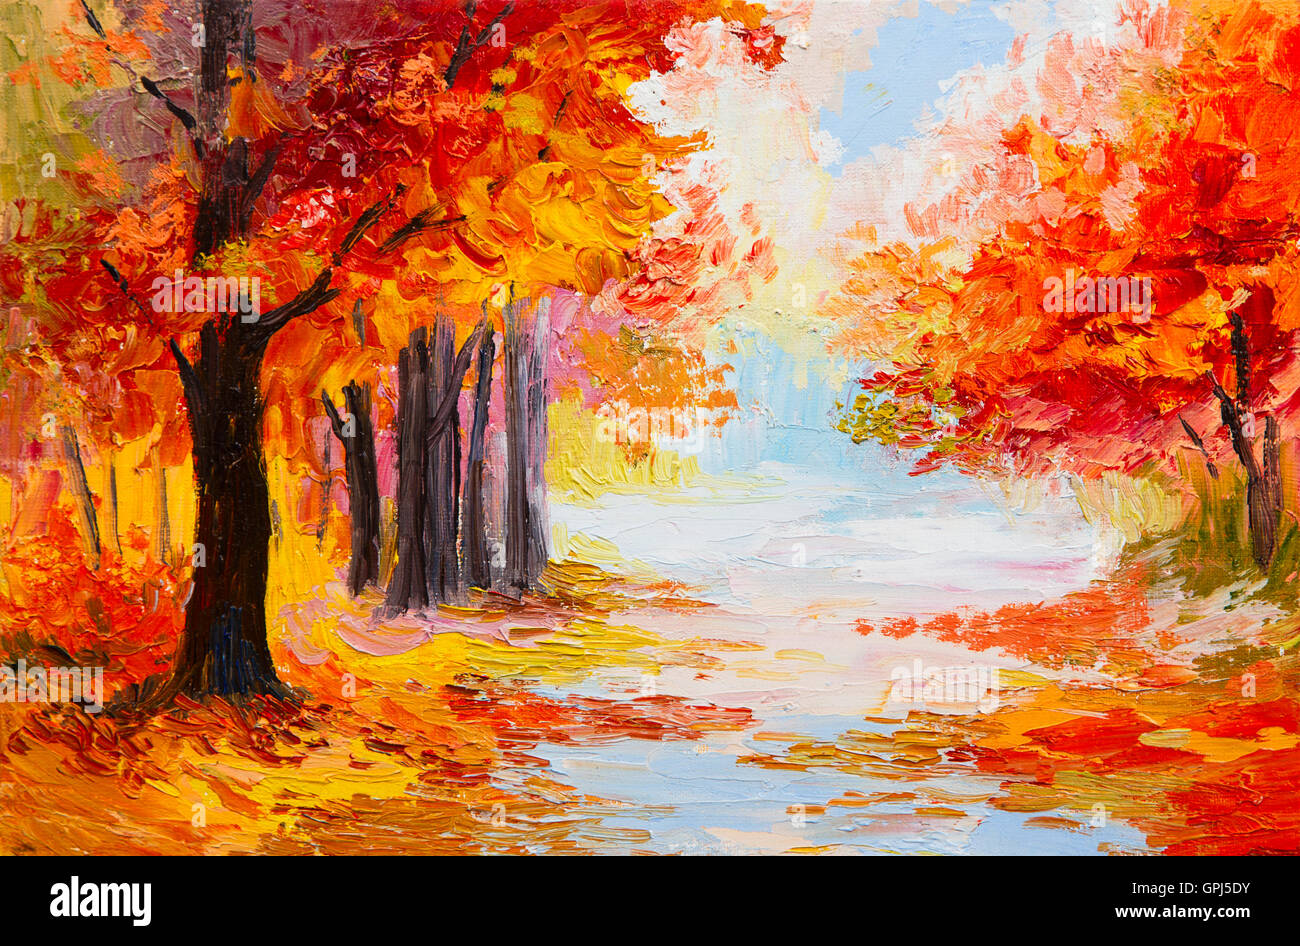 Ölgemälde Landschaft - bunten Herbstwald. Abstrakt malen Stockfoto